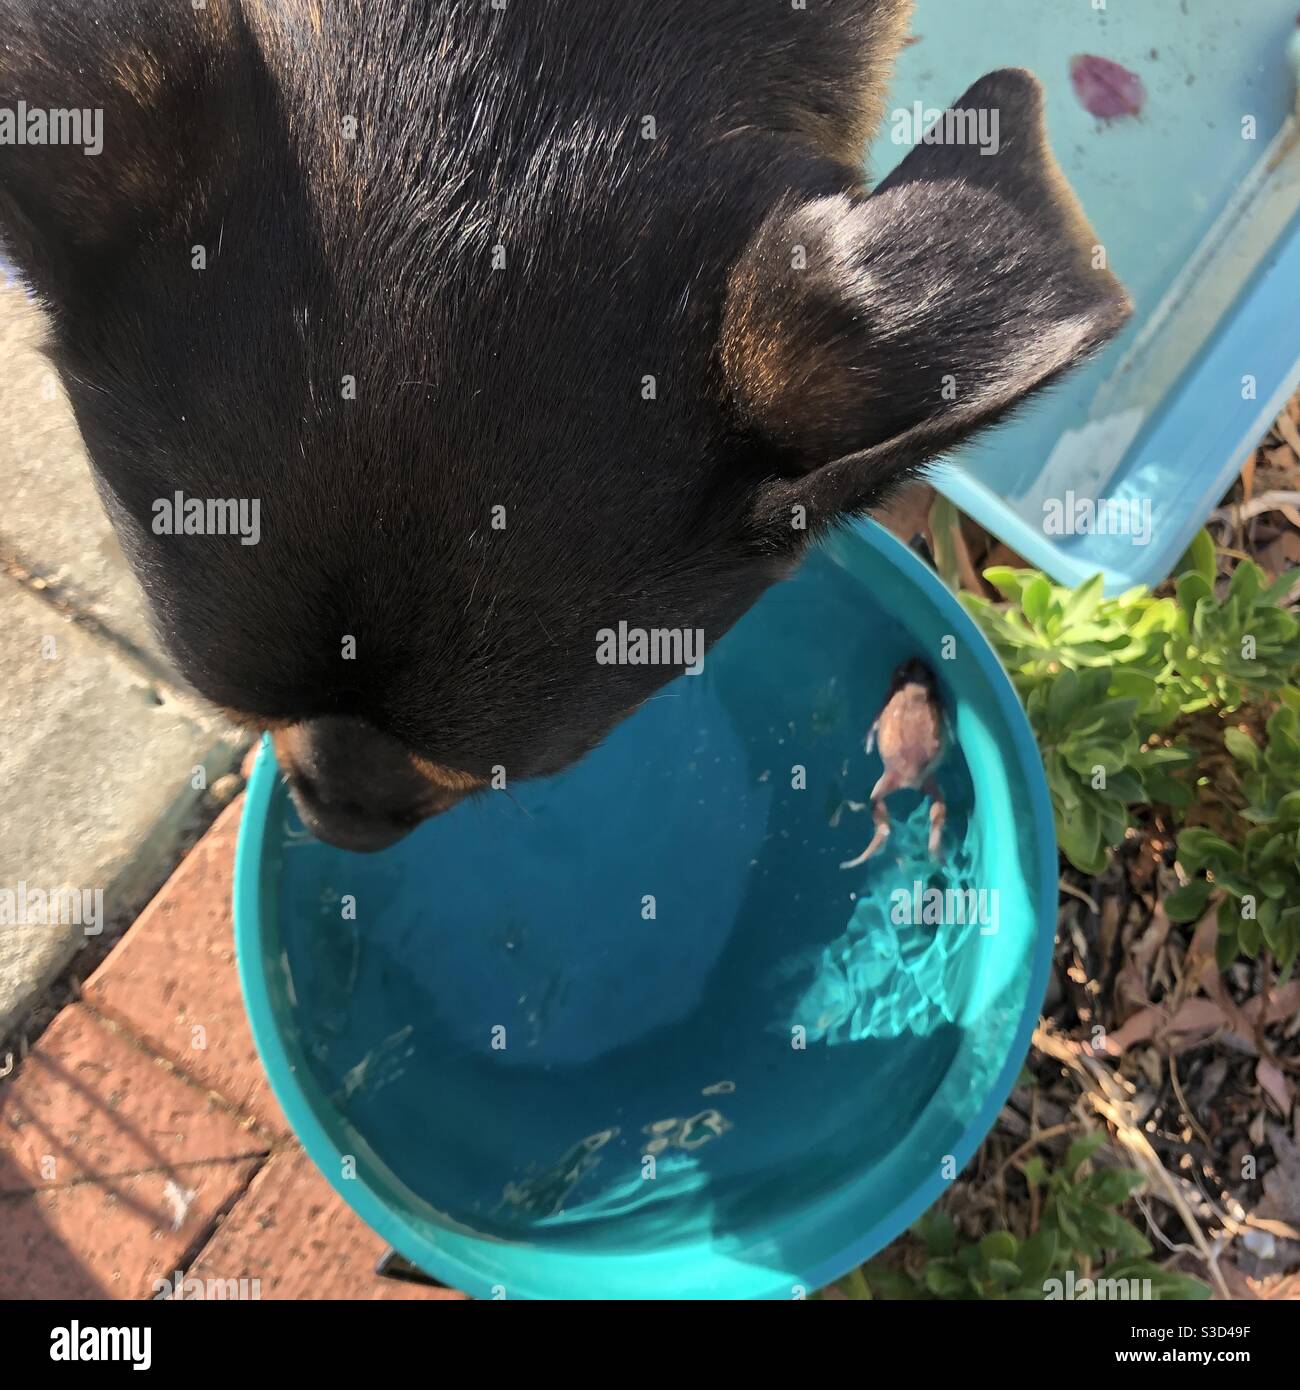 Le chien boit alors qu'une grenouille nage dans son bol d'eau Banque D'Images